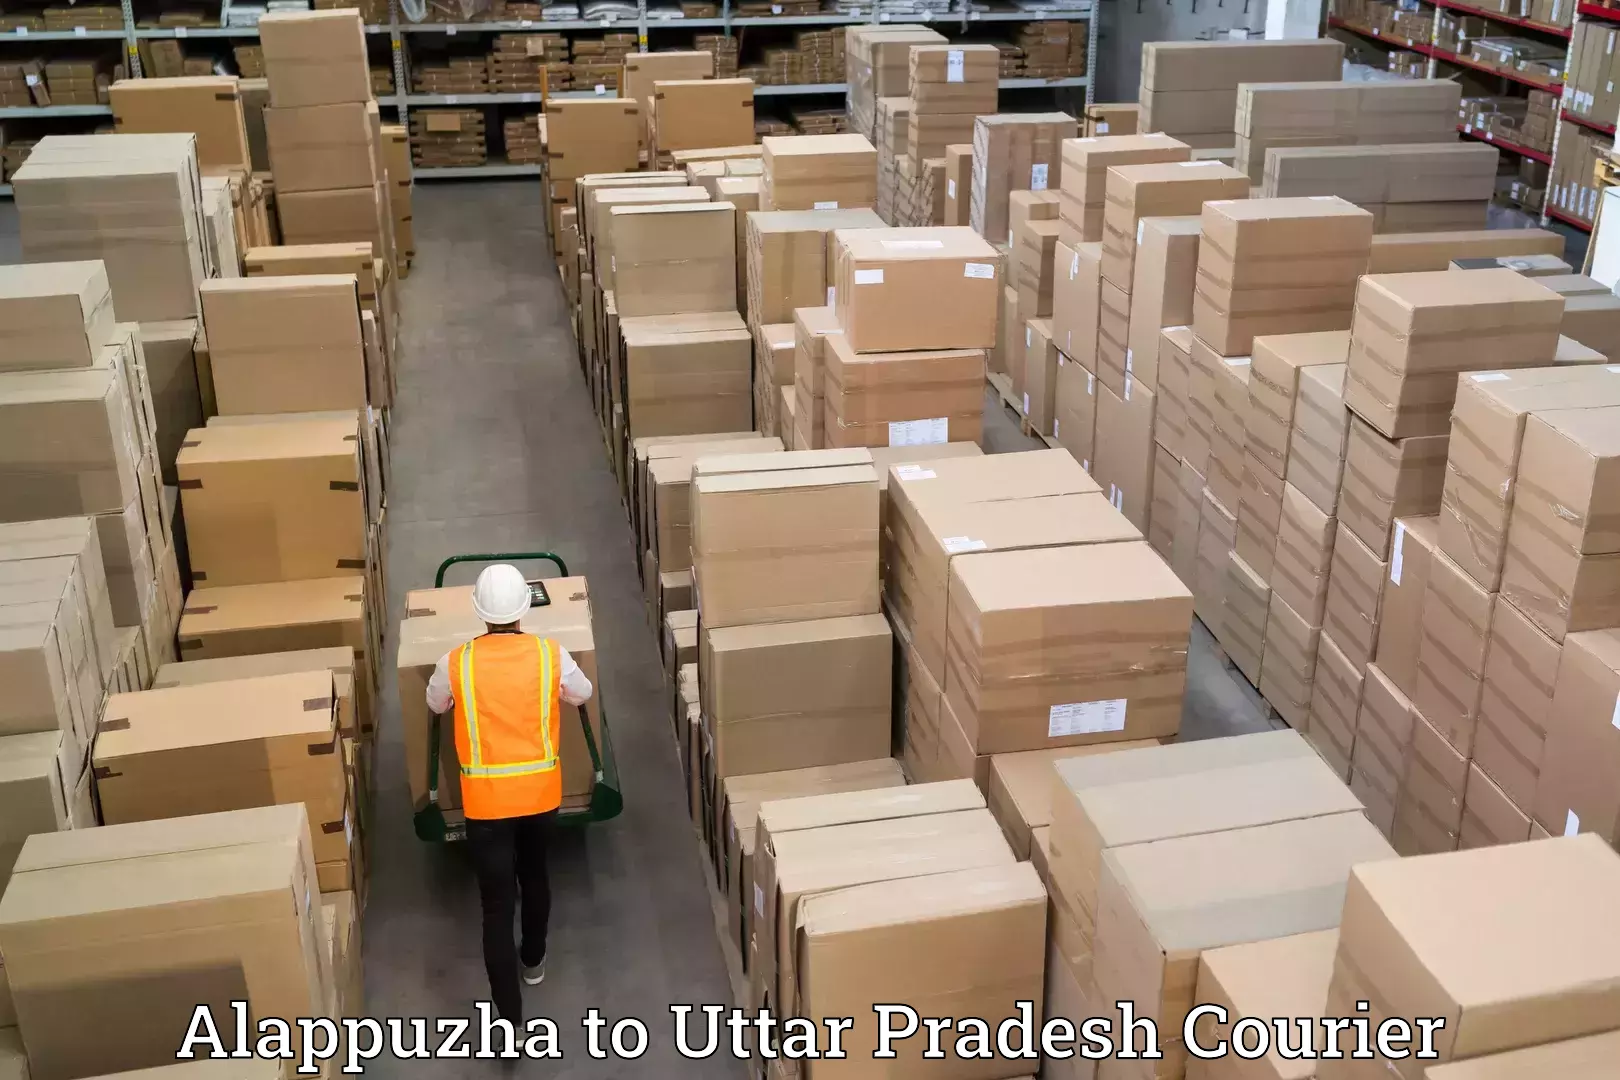 Efficient relocation services Alappuzha to Uttar Pradesh